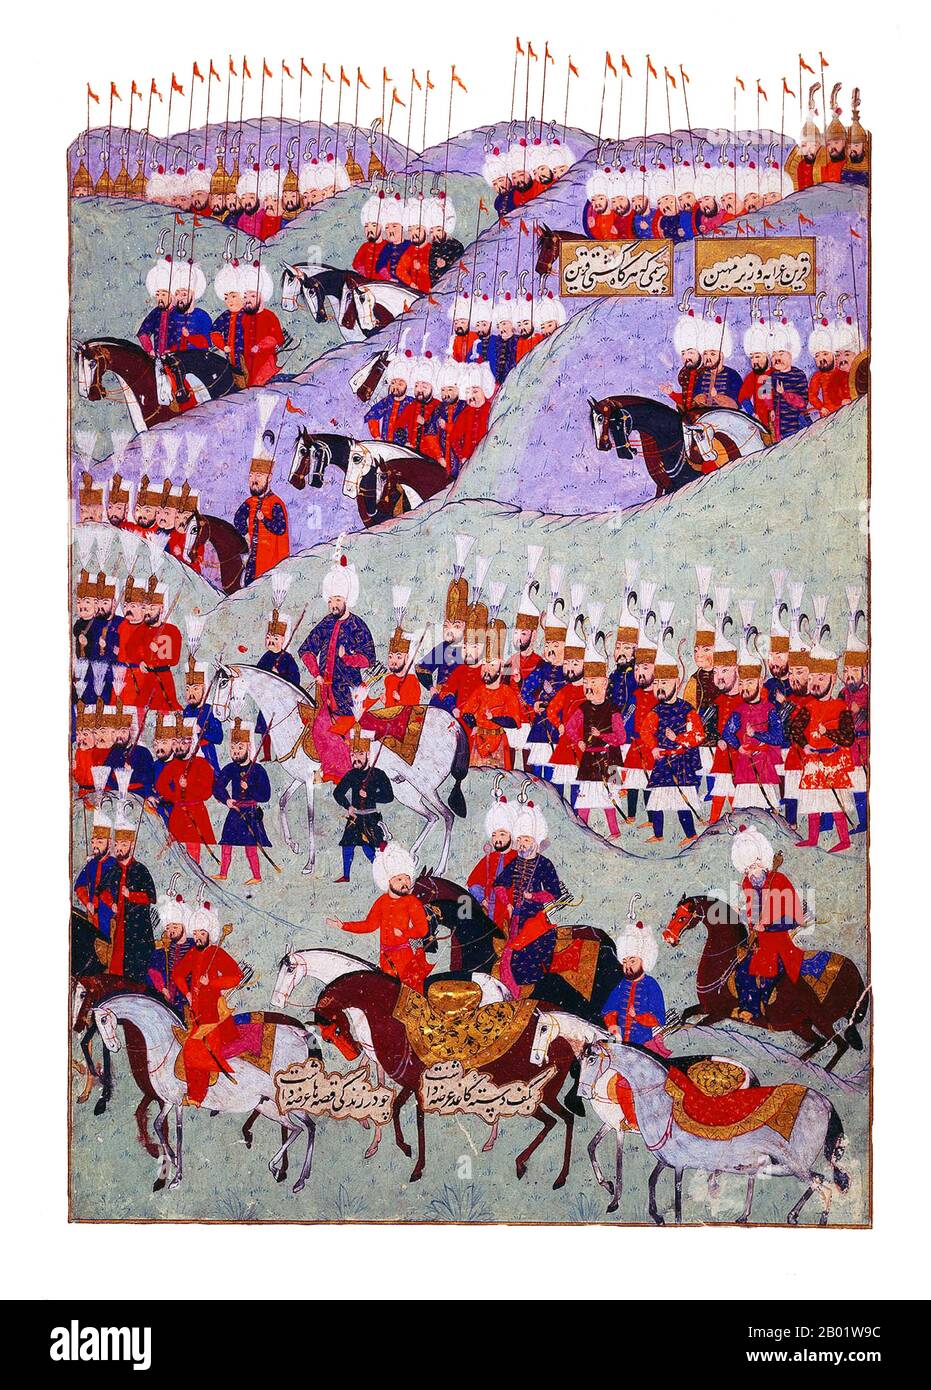 Turchia: Il funerale del sultano Solimano il magnifico (6 novembre 1494 - 6 settembre 1566). Pittura in miniatura ottomana (pannello a destra) di Matrakci Nasuh, 1579. Suleyman/Solimano i (r. 1520-1566), noto anche come "Solimano il magnifico" e "Solimano il legislatore", fu il decimo e più lungo sultano regnante dell'impero ottomano. Guidò personalmente i suoi eserciti alla conquista della Transilvania, del Caspio, di gran parte del Medio Oriente e del Maghreb. Suleyman introdusse ampie riforme nella legislazione turca, nell'istruzione, nella tassazione e nel diritto penale, ed era molto rispettato come poeta e orafo. Foto Stock